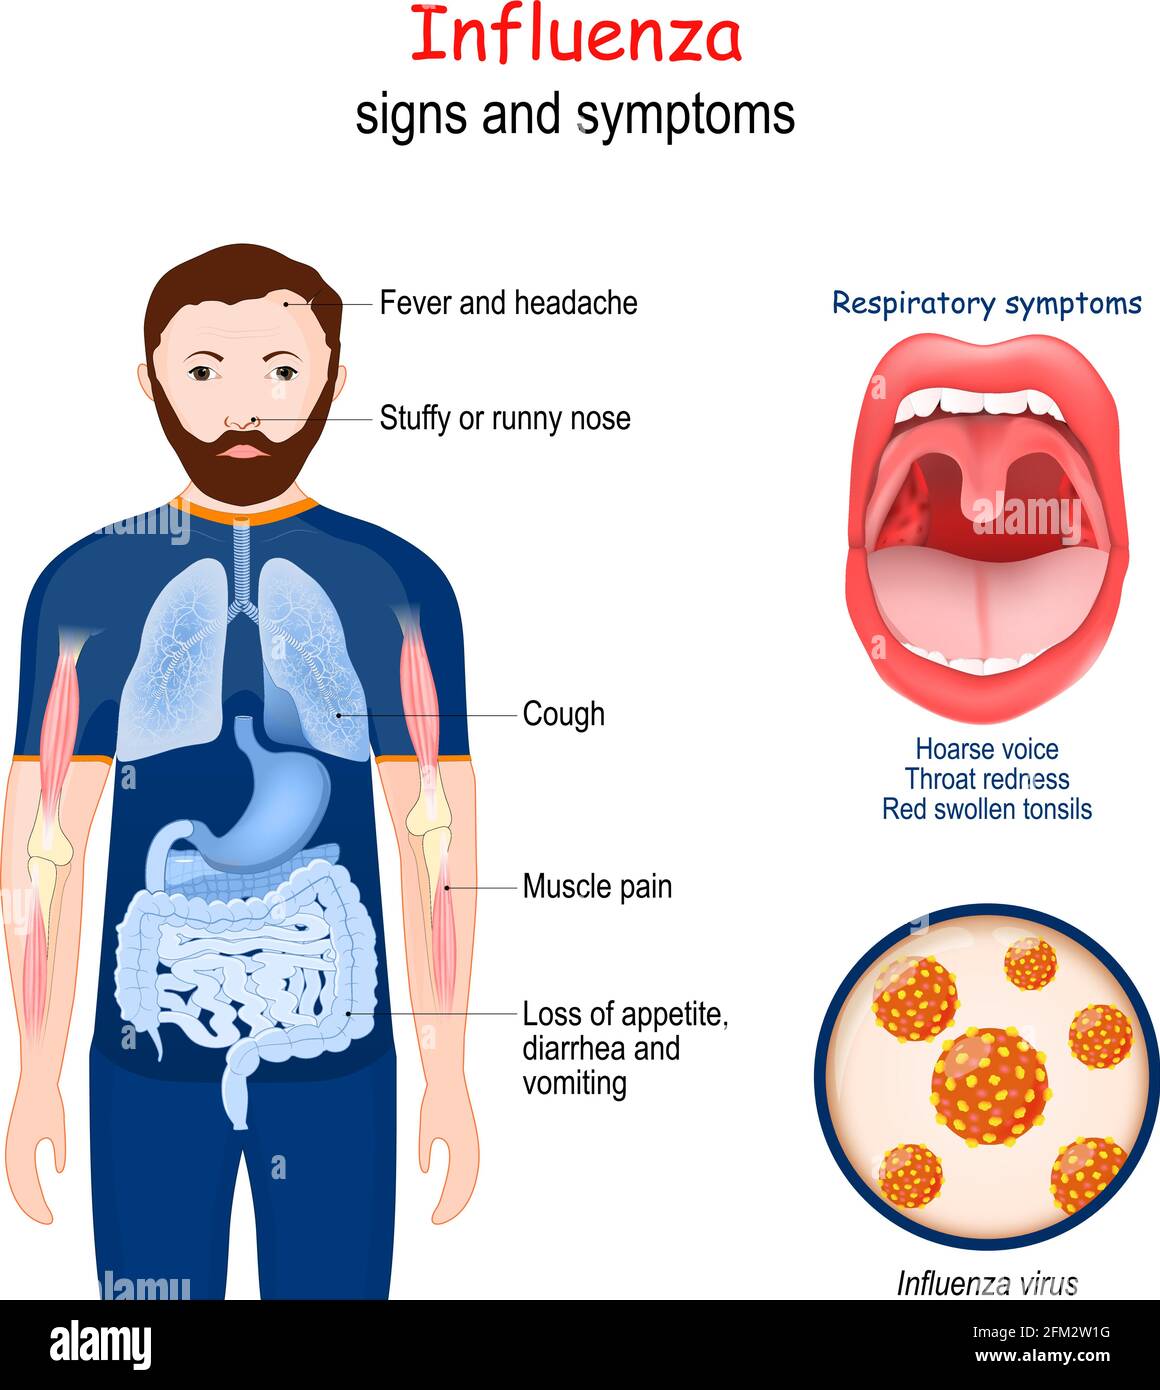 La grippe. Signes et symptômes de maladies infectieuses. Grossissement des virus de la grippe. Gros plan de la bouche humaine avec des amygdales rouges et gonflées Illustration de Vecteur